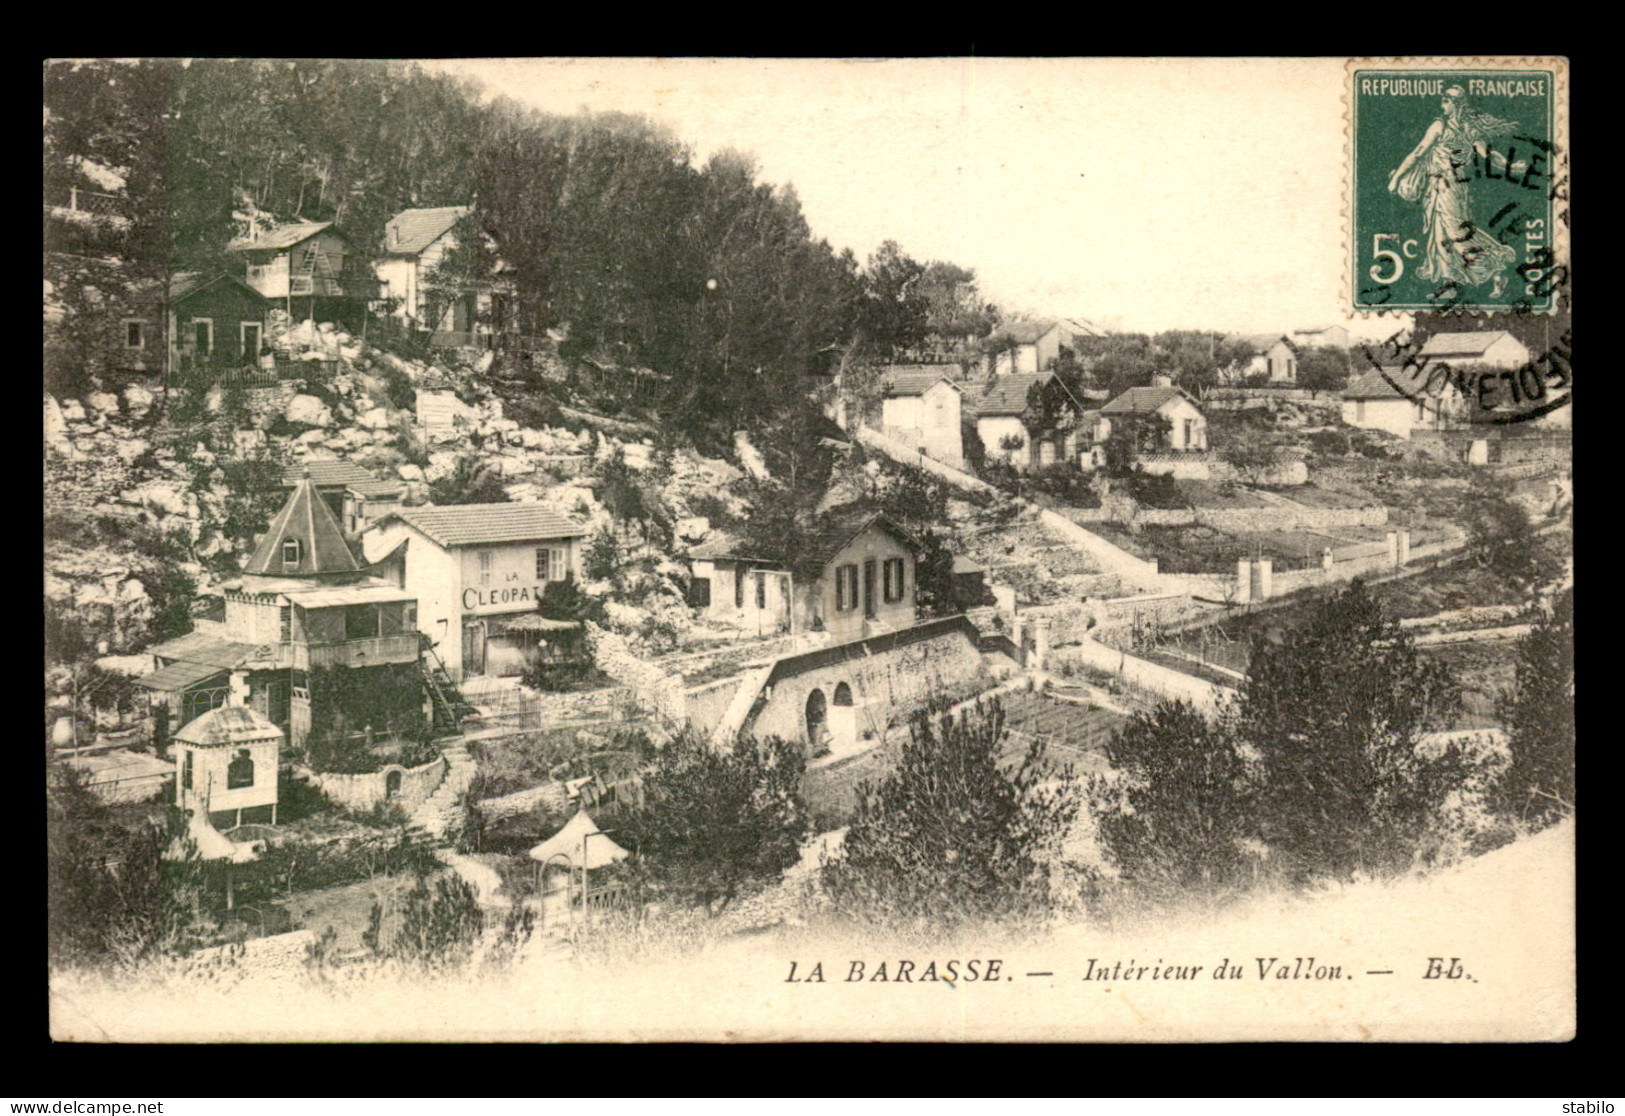 13 - MARSEILLE 11EME - LA BARASSE - INTERIEUR DU VALLON - Saint Marcel, La Barasse, St Menet